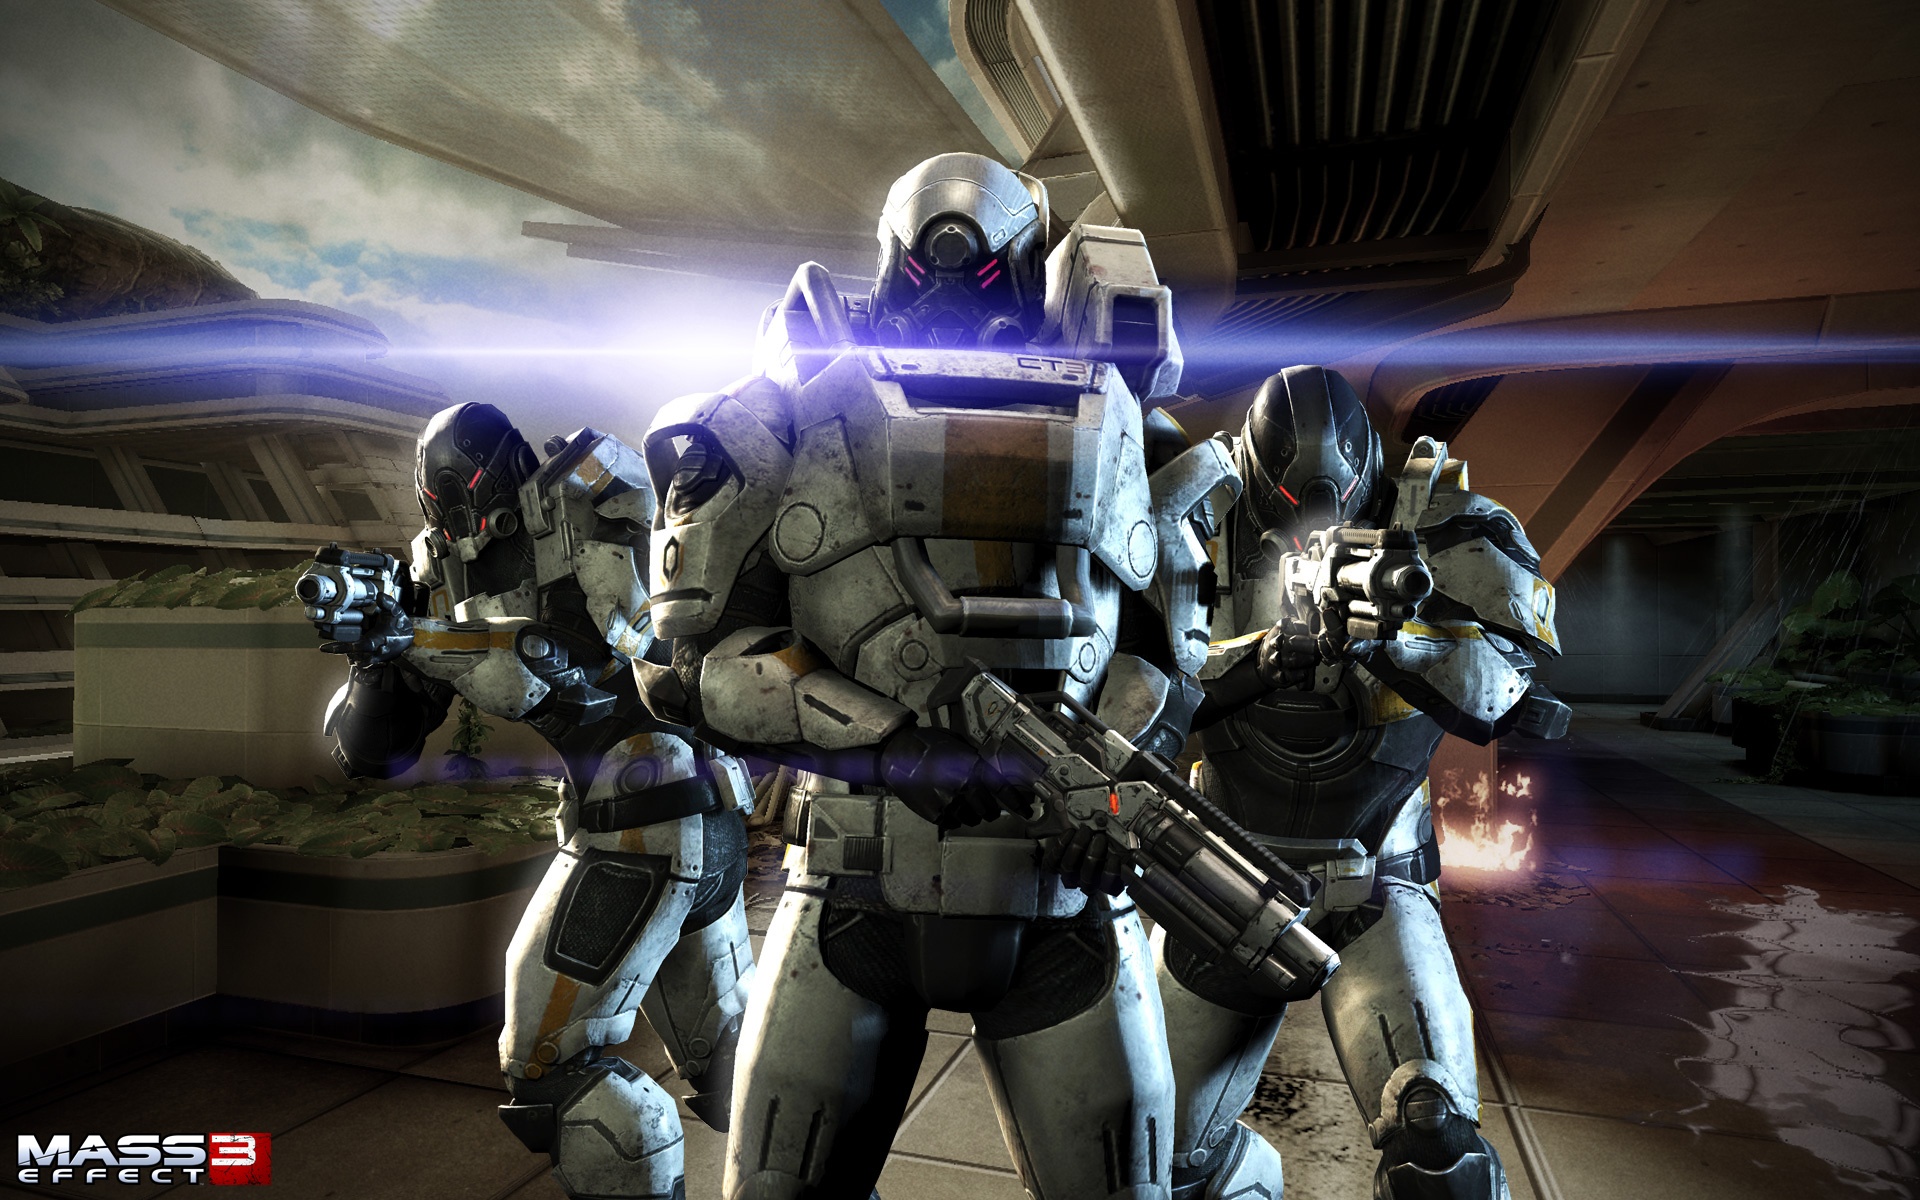 Cerberus video game wallpaper featuring Mass Effect 3.